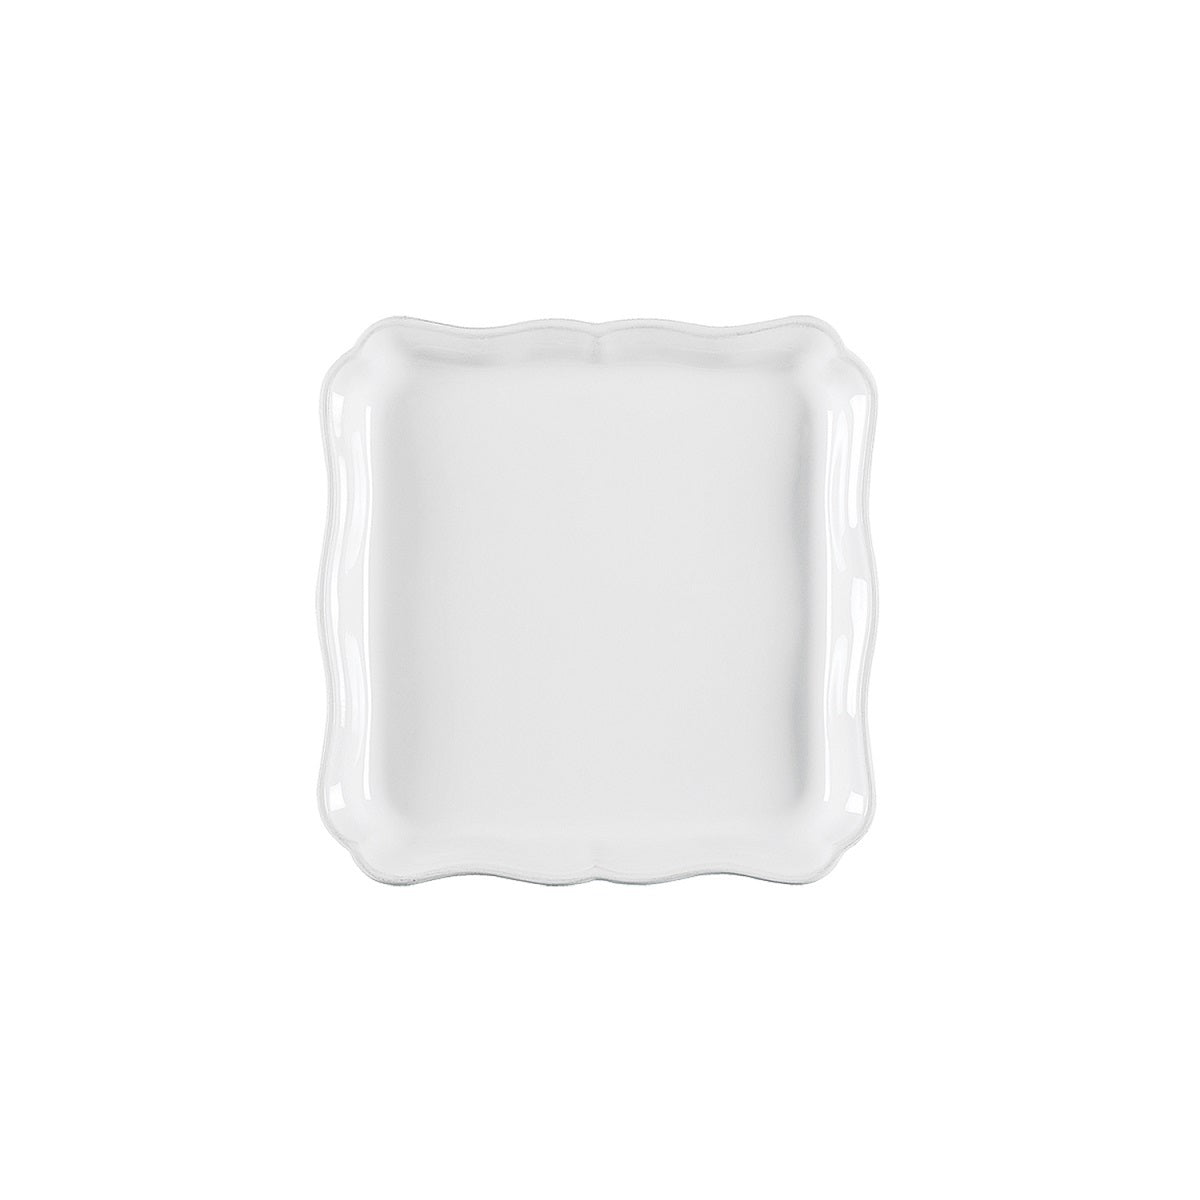 [仲量聯行優惠] COSTA NOVA | Alentejo 前菜器皿禮品套裝 (白色)